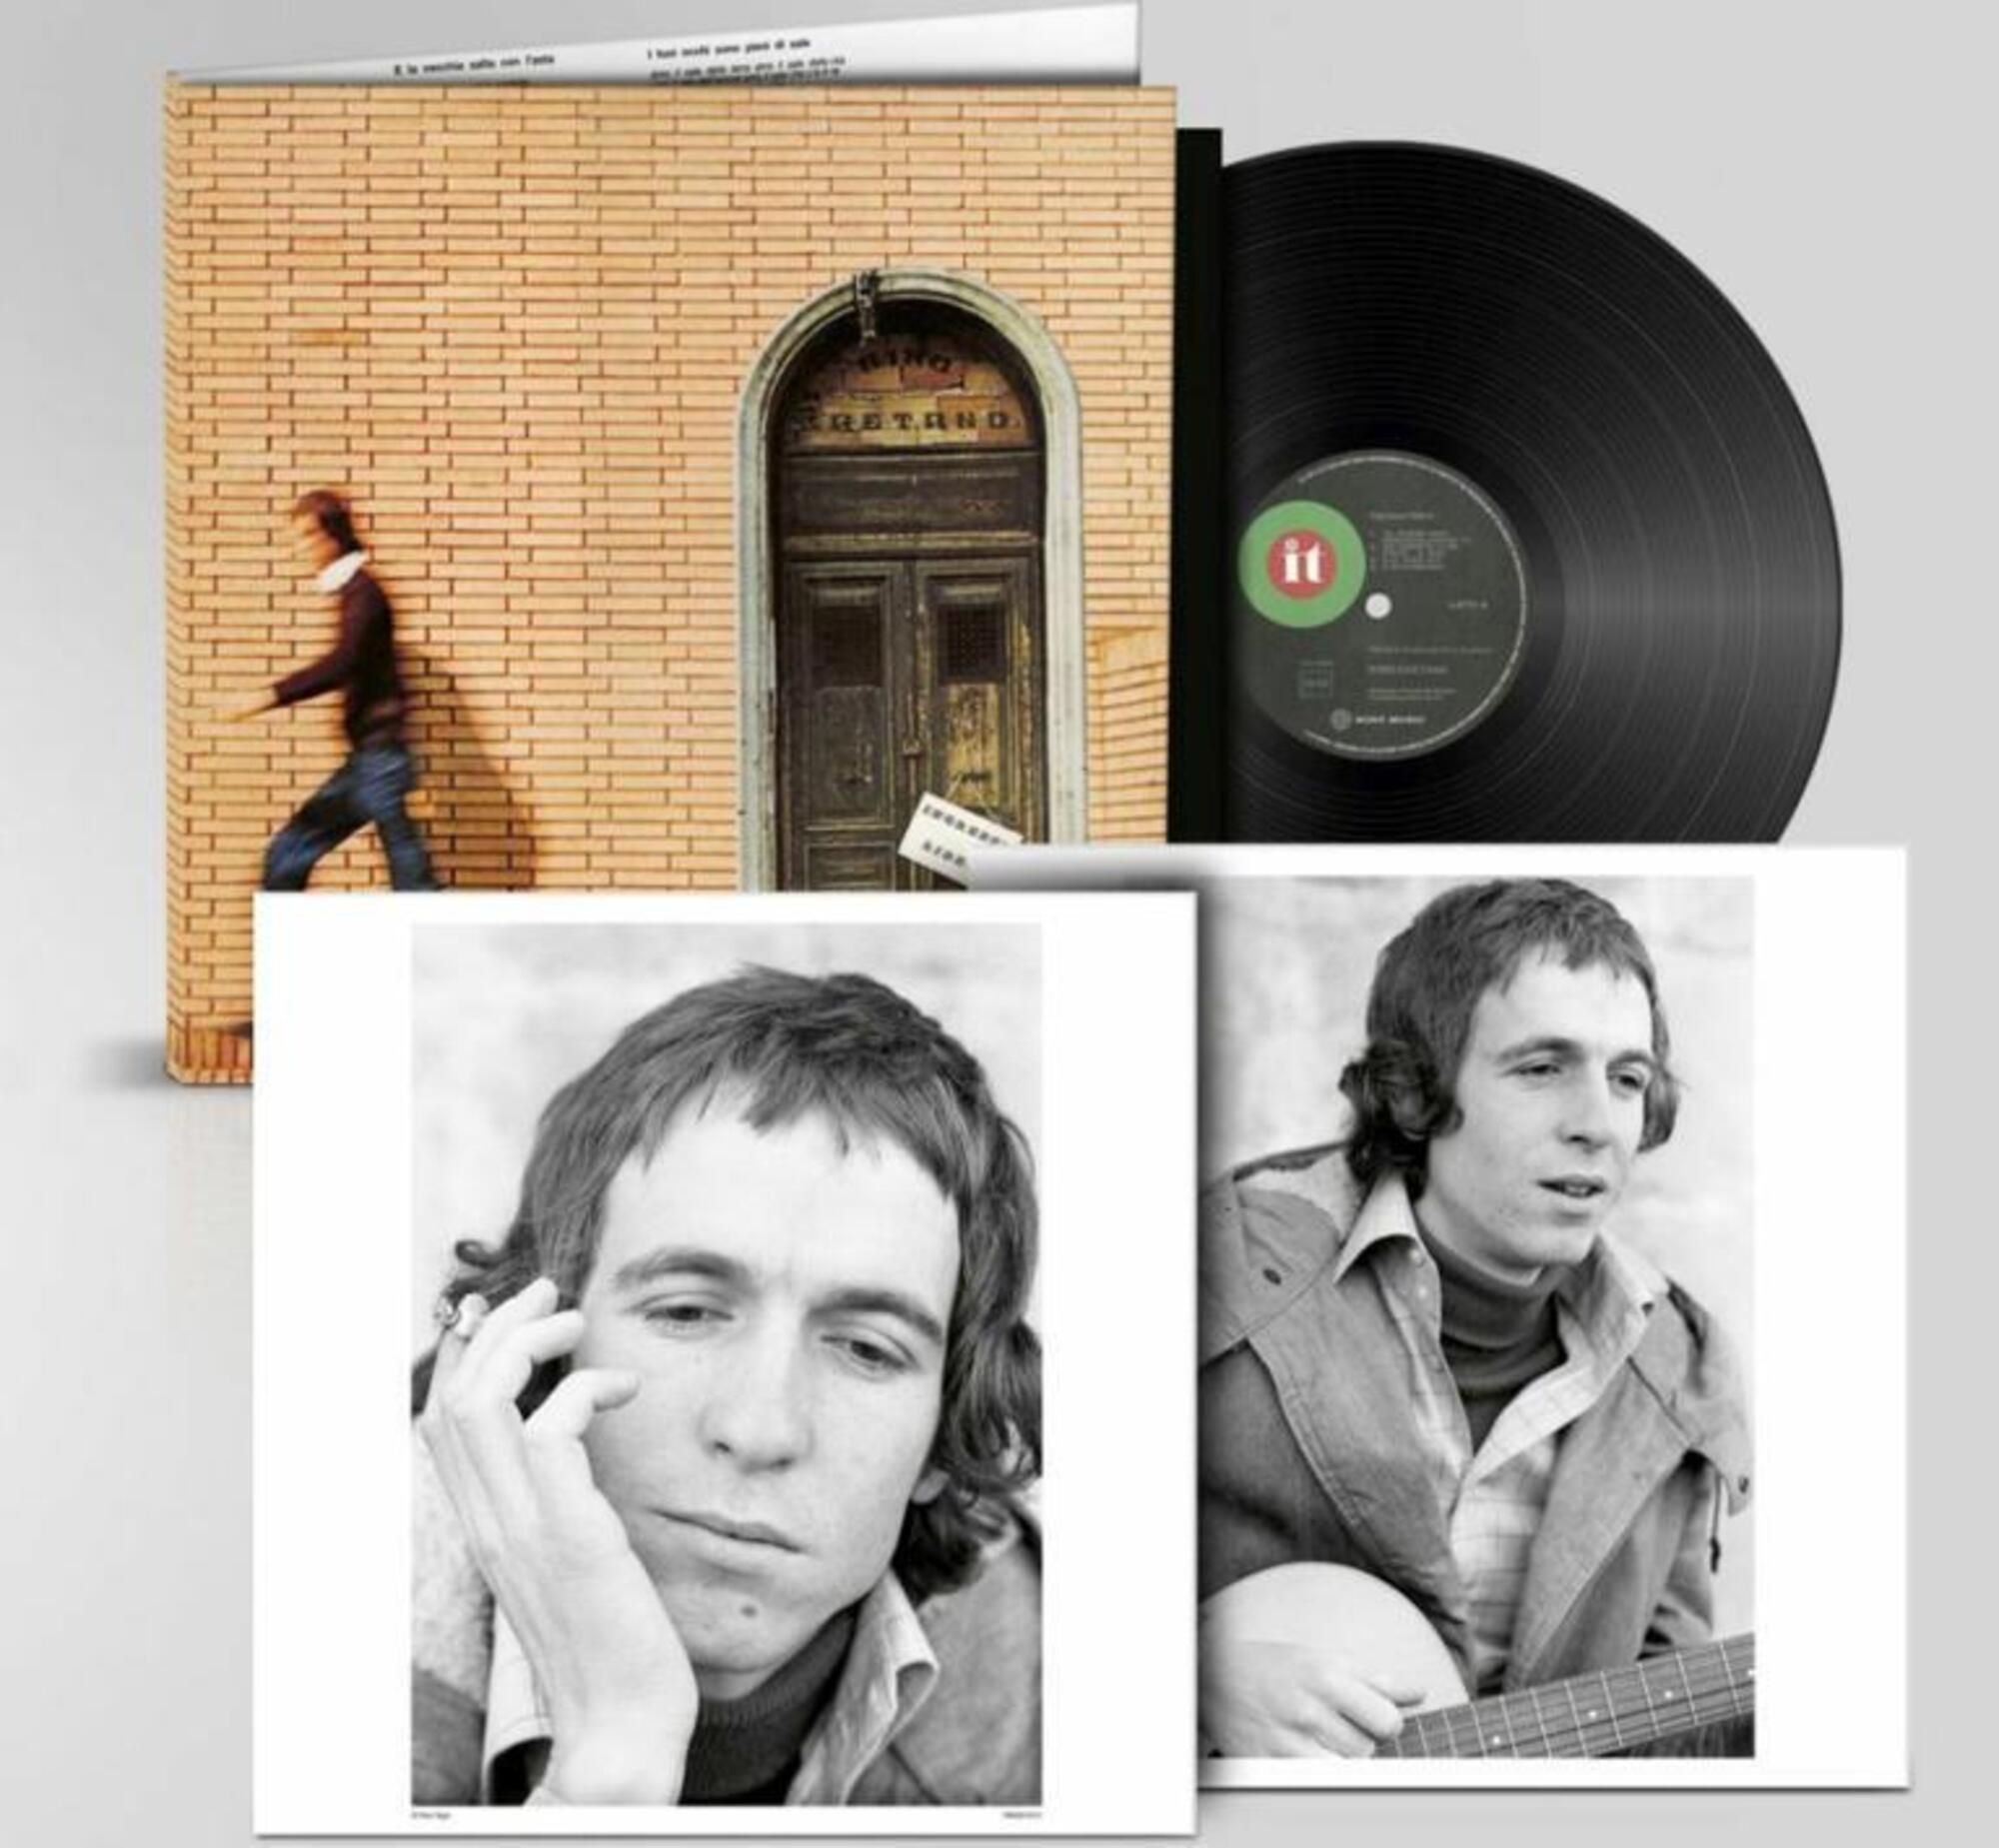 Ingresso Libero, il primo disco pubblicato d Rino Gaetano con il suo nome nel 1974